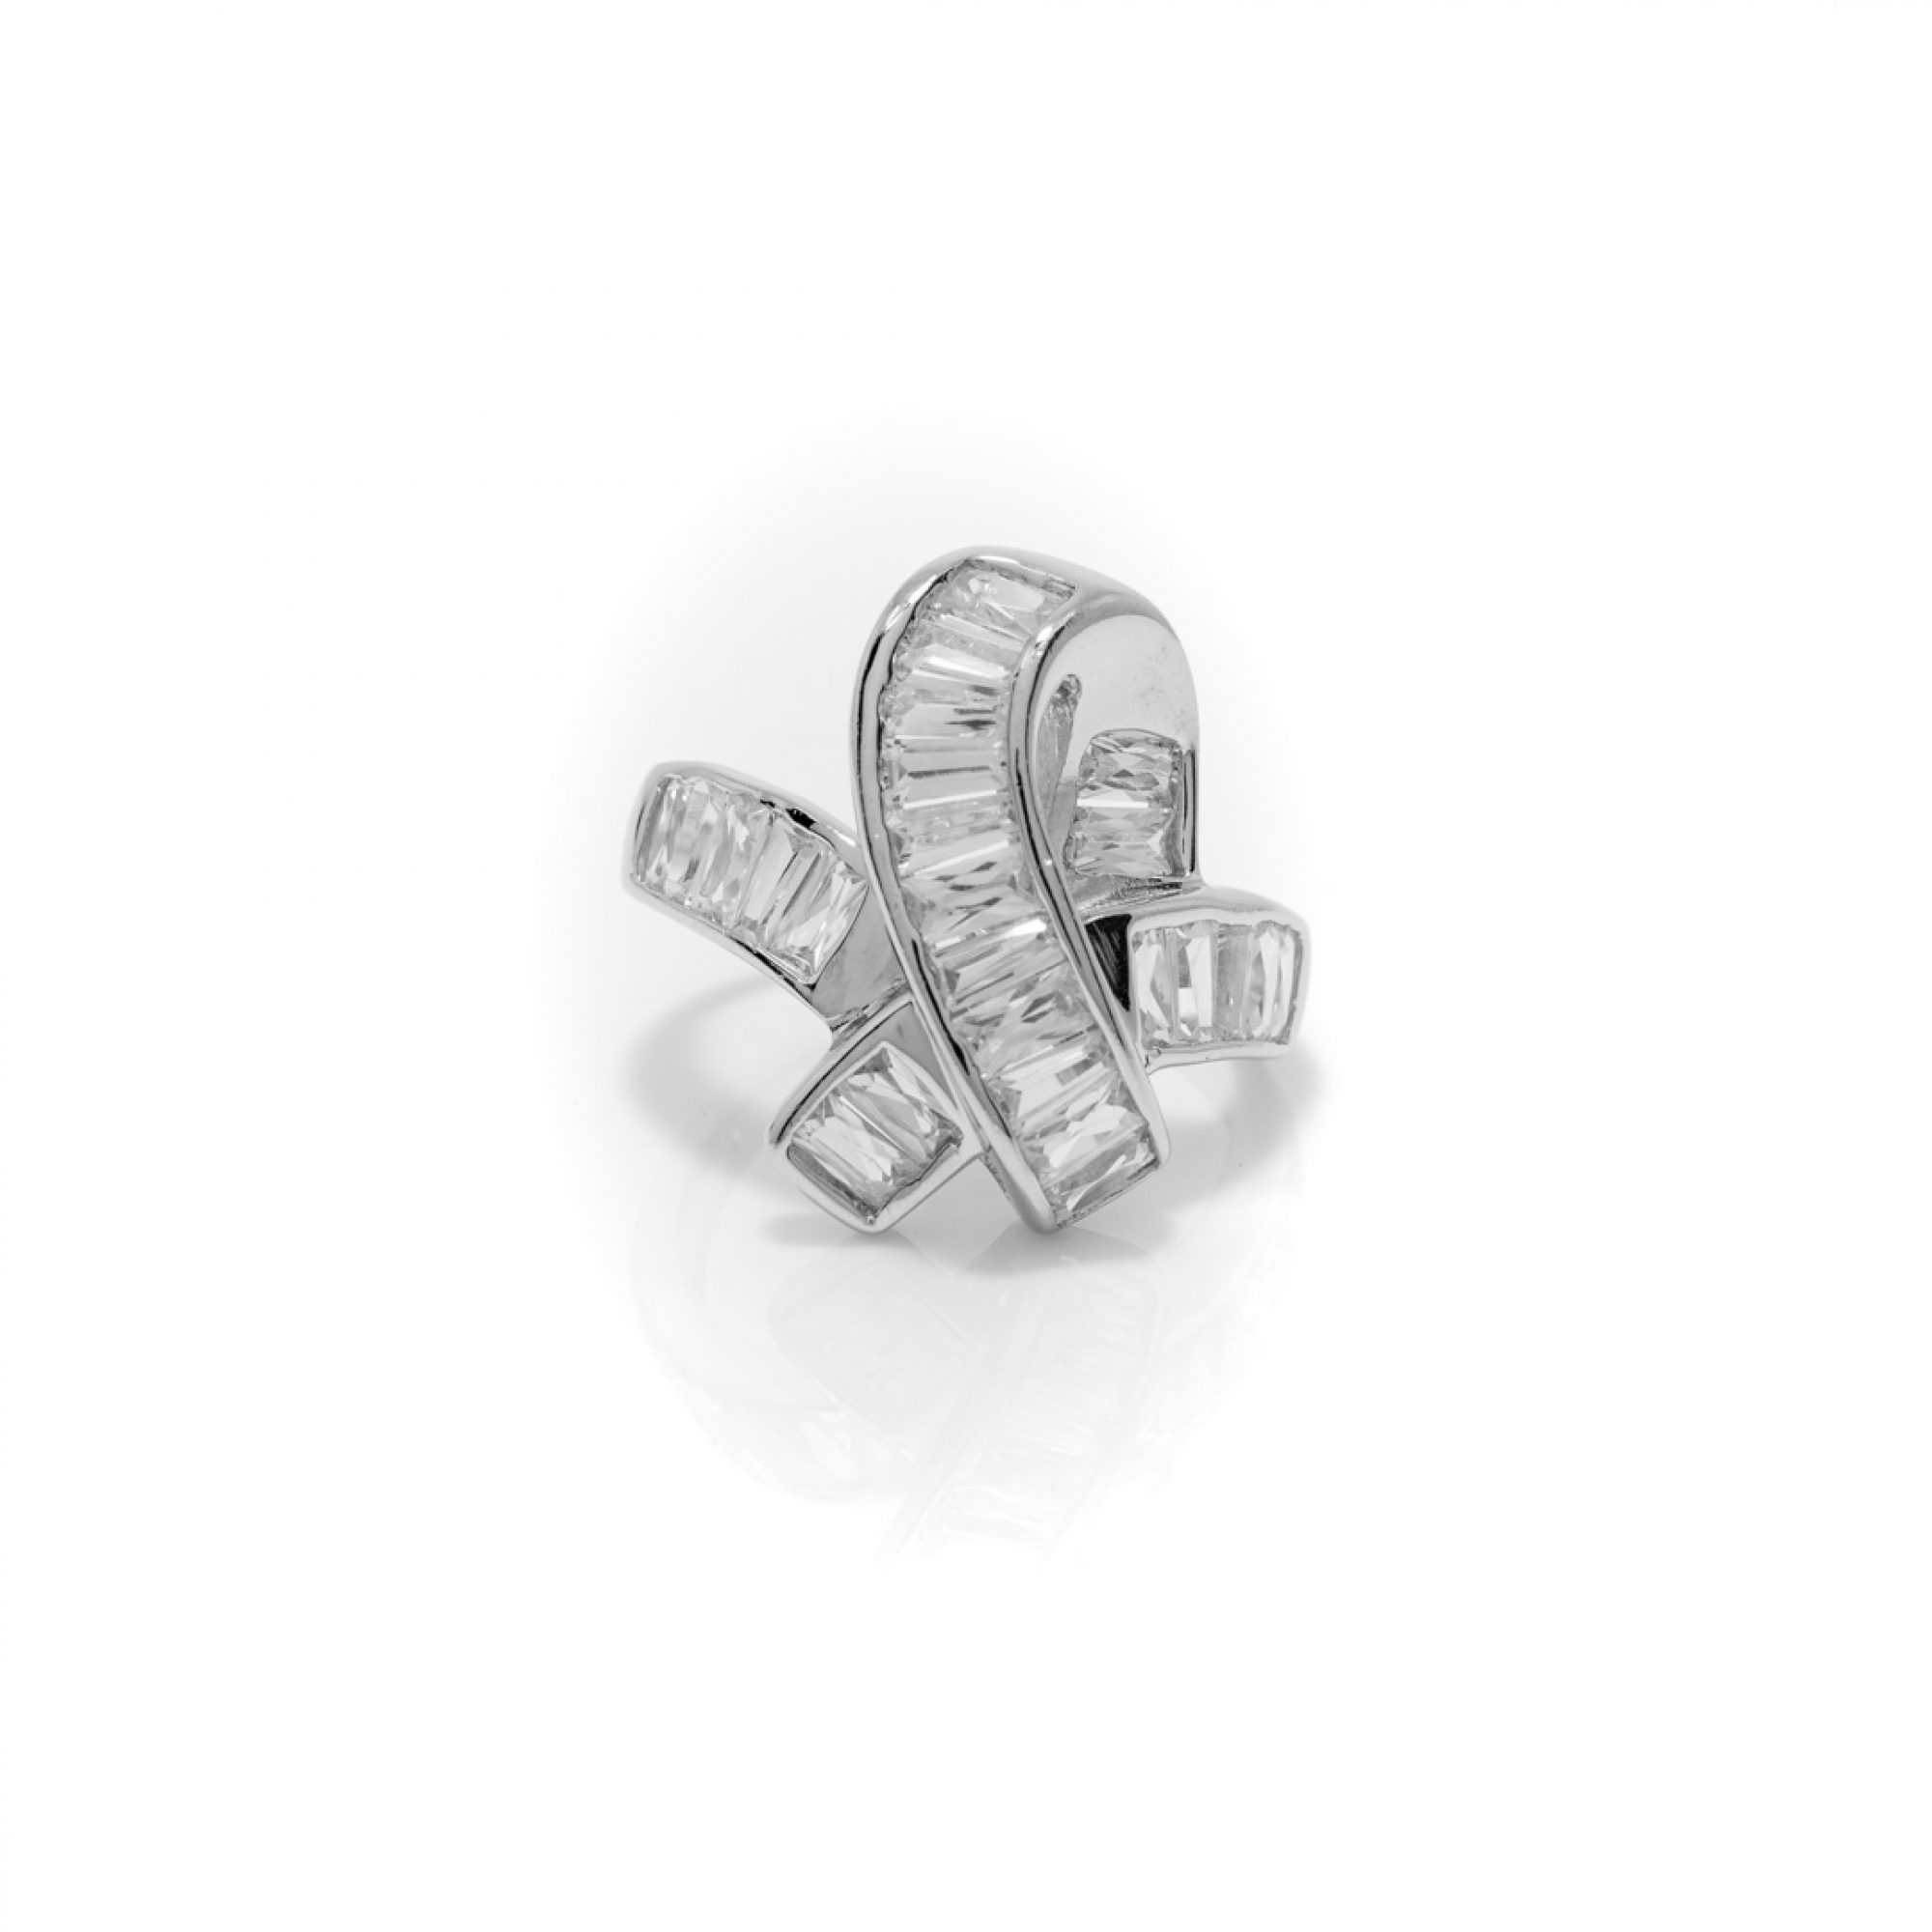 Ring with zircon stones